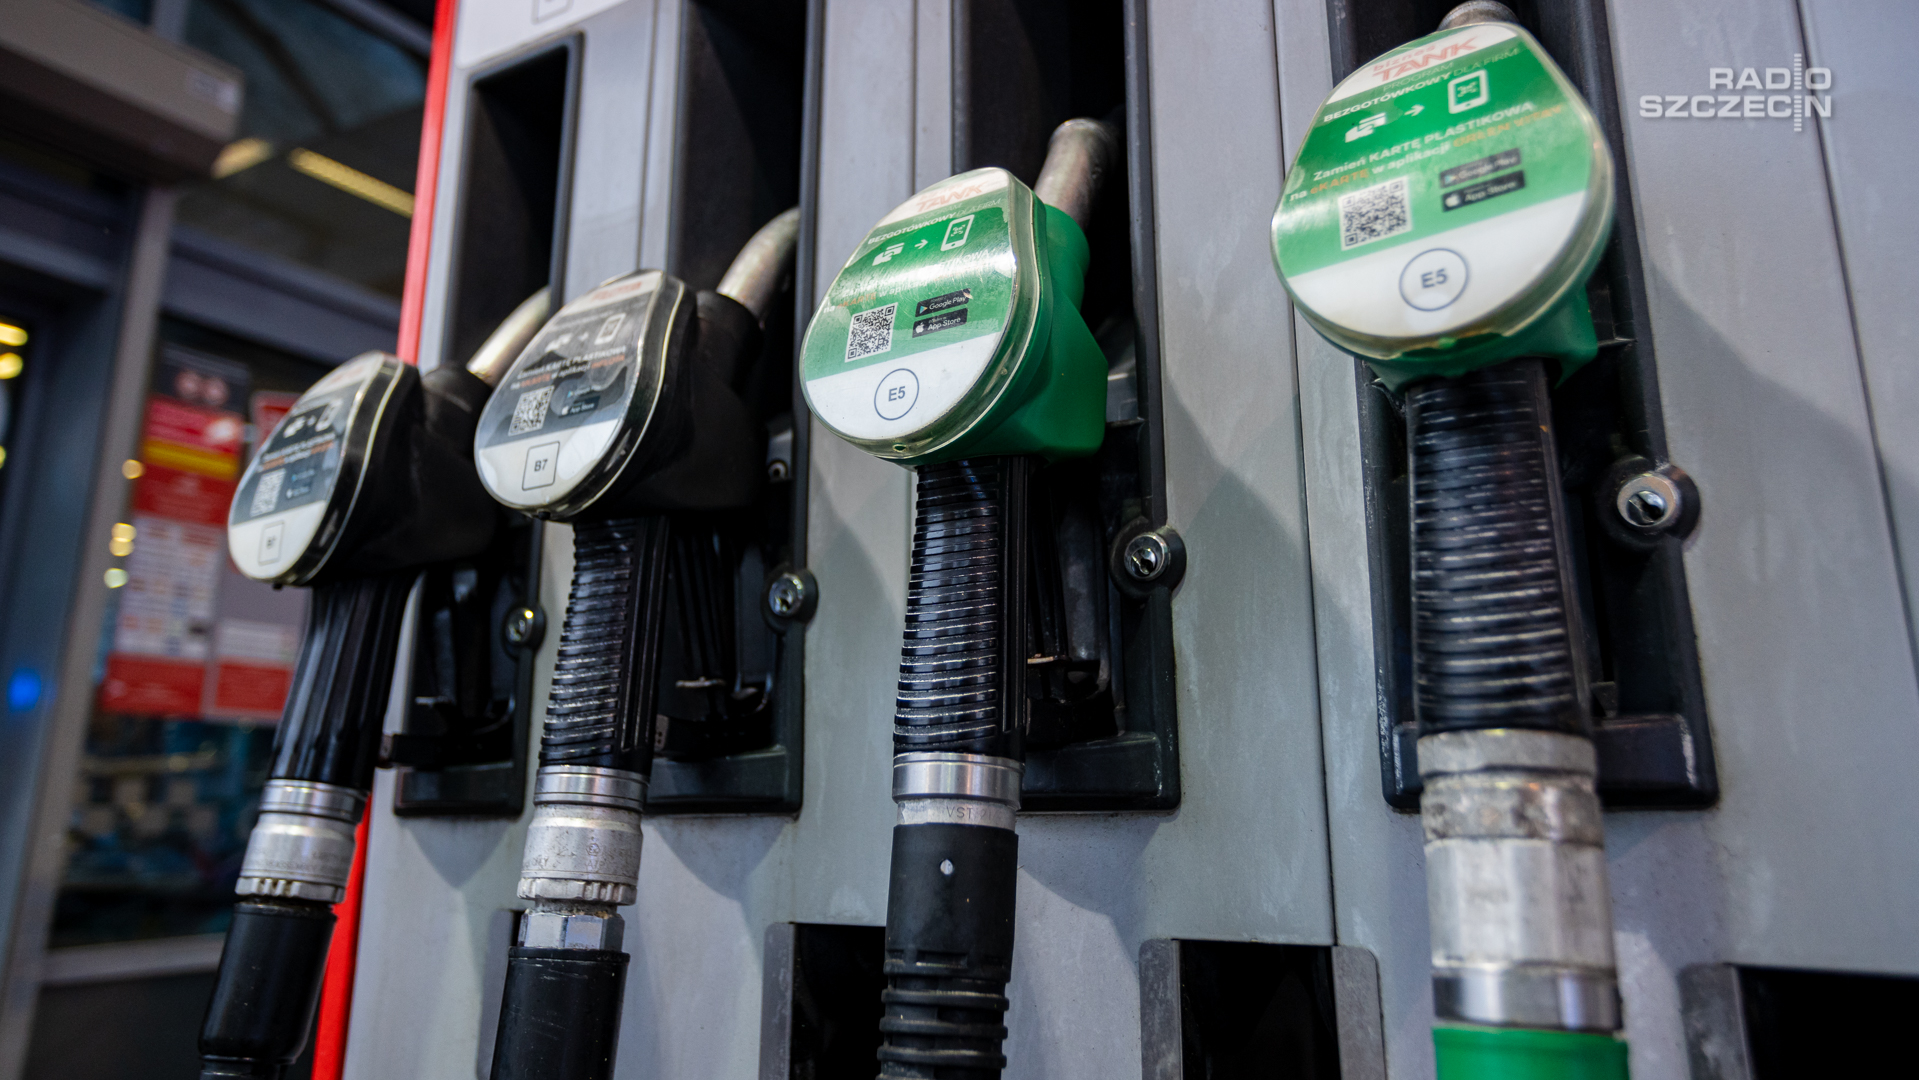 To jeszcze nie koniec obniżek na stacjach, w kolejnych dniach zarówno ceny benzyny, jak i oleju napędowego będą spadać - przewidują analitycy z firmy BM Reflex.